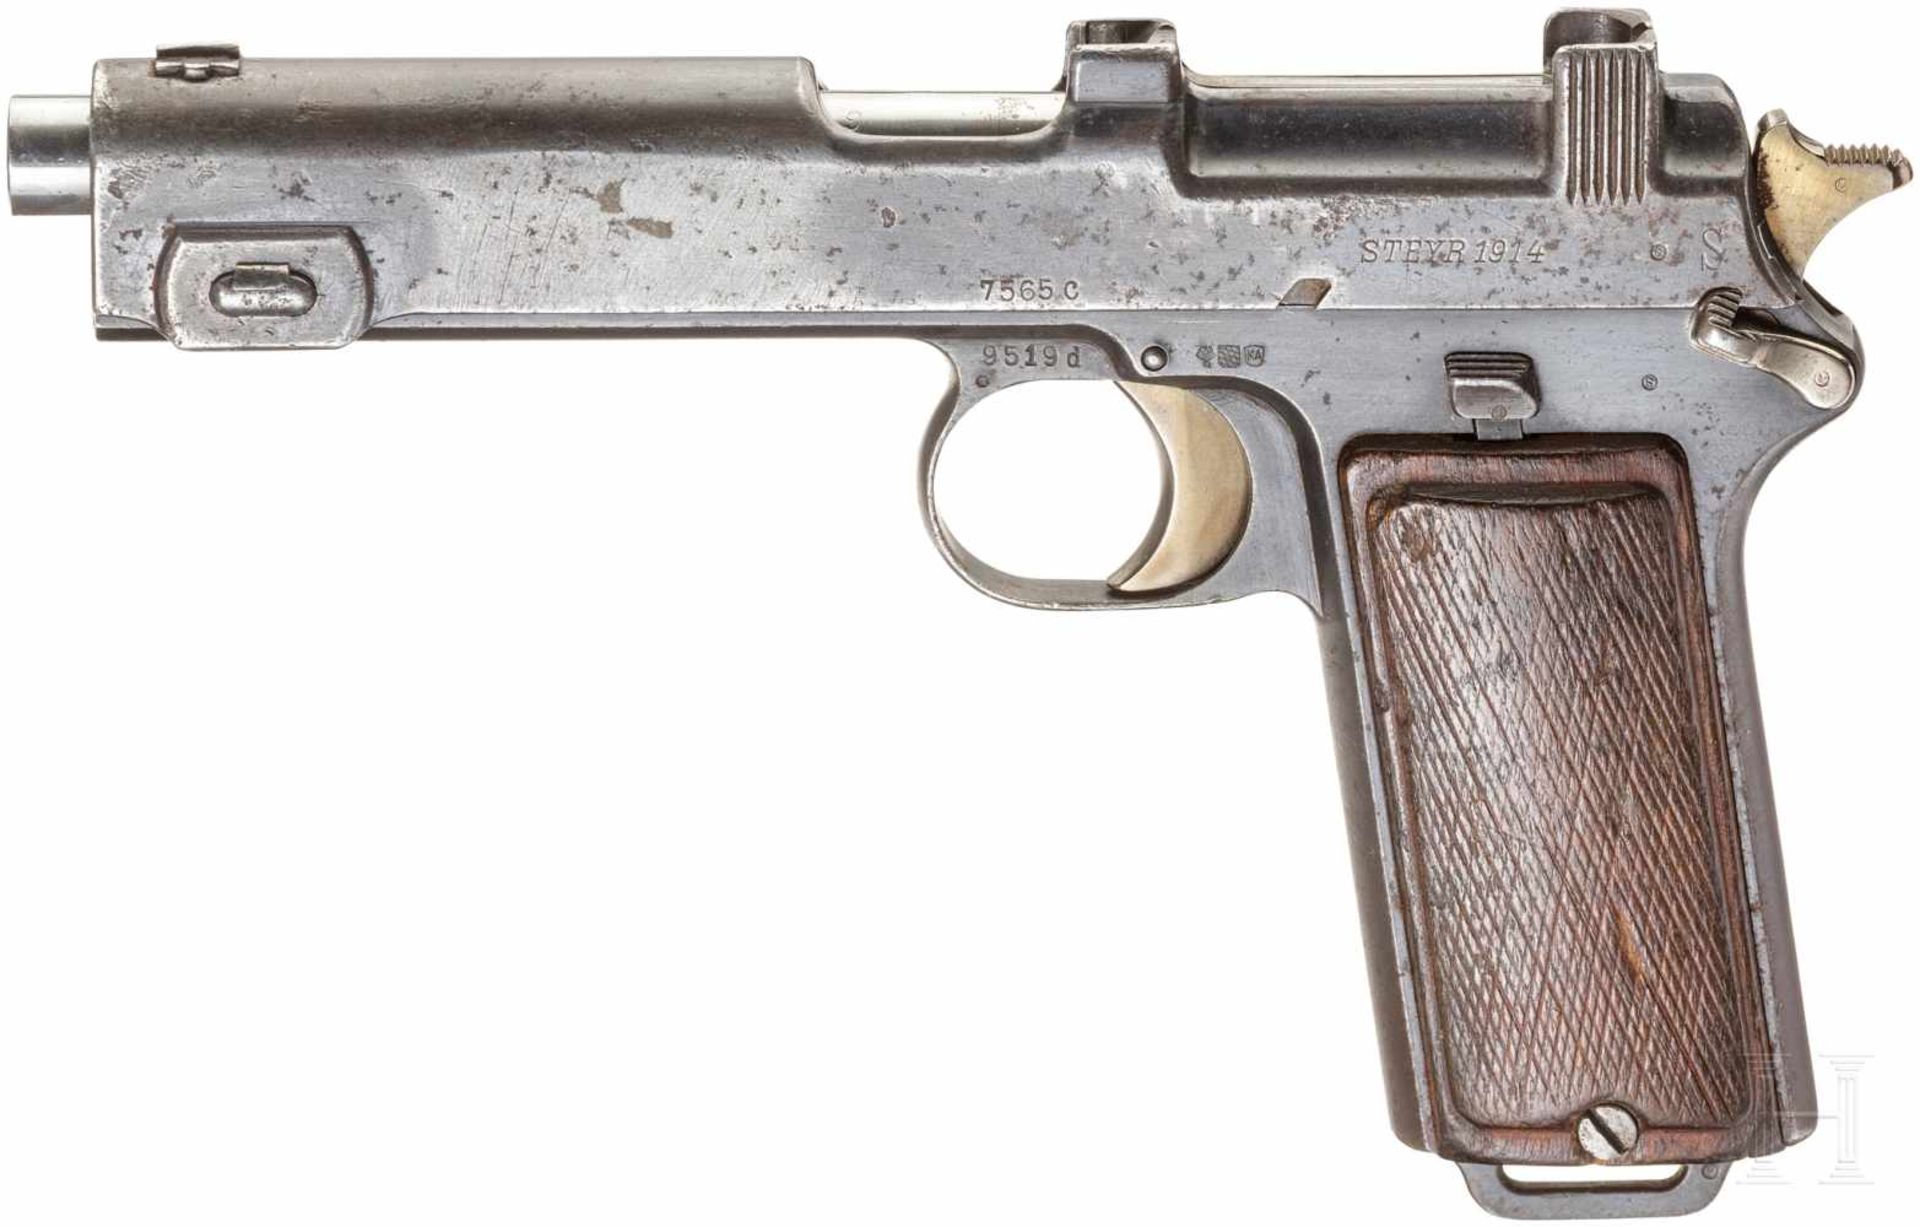 Steyr Mod. 1912Kal. 9 mm Steyr, Nr. 9519d, Nicht nummerngleich. Blanker Lauf. Achtschüssig. Dt.